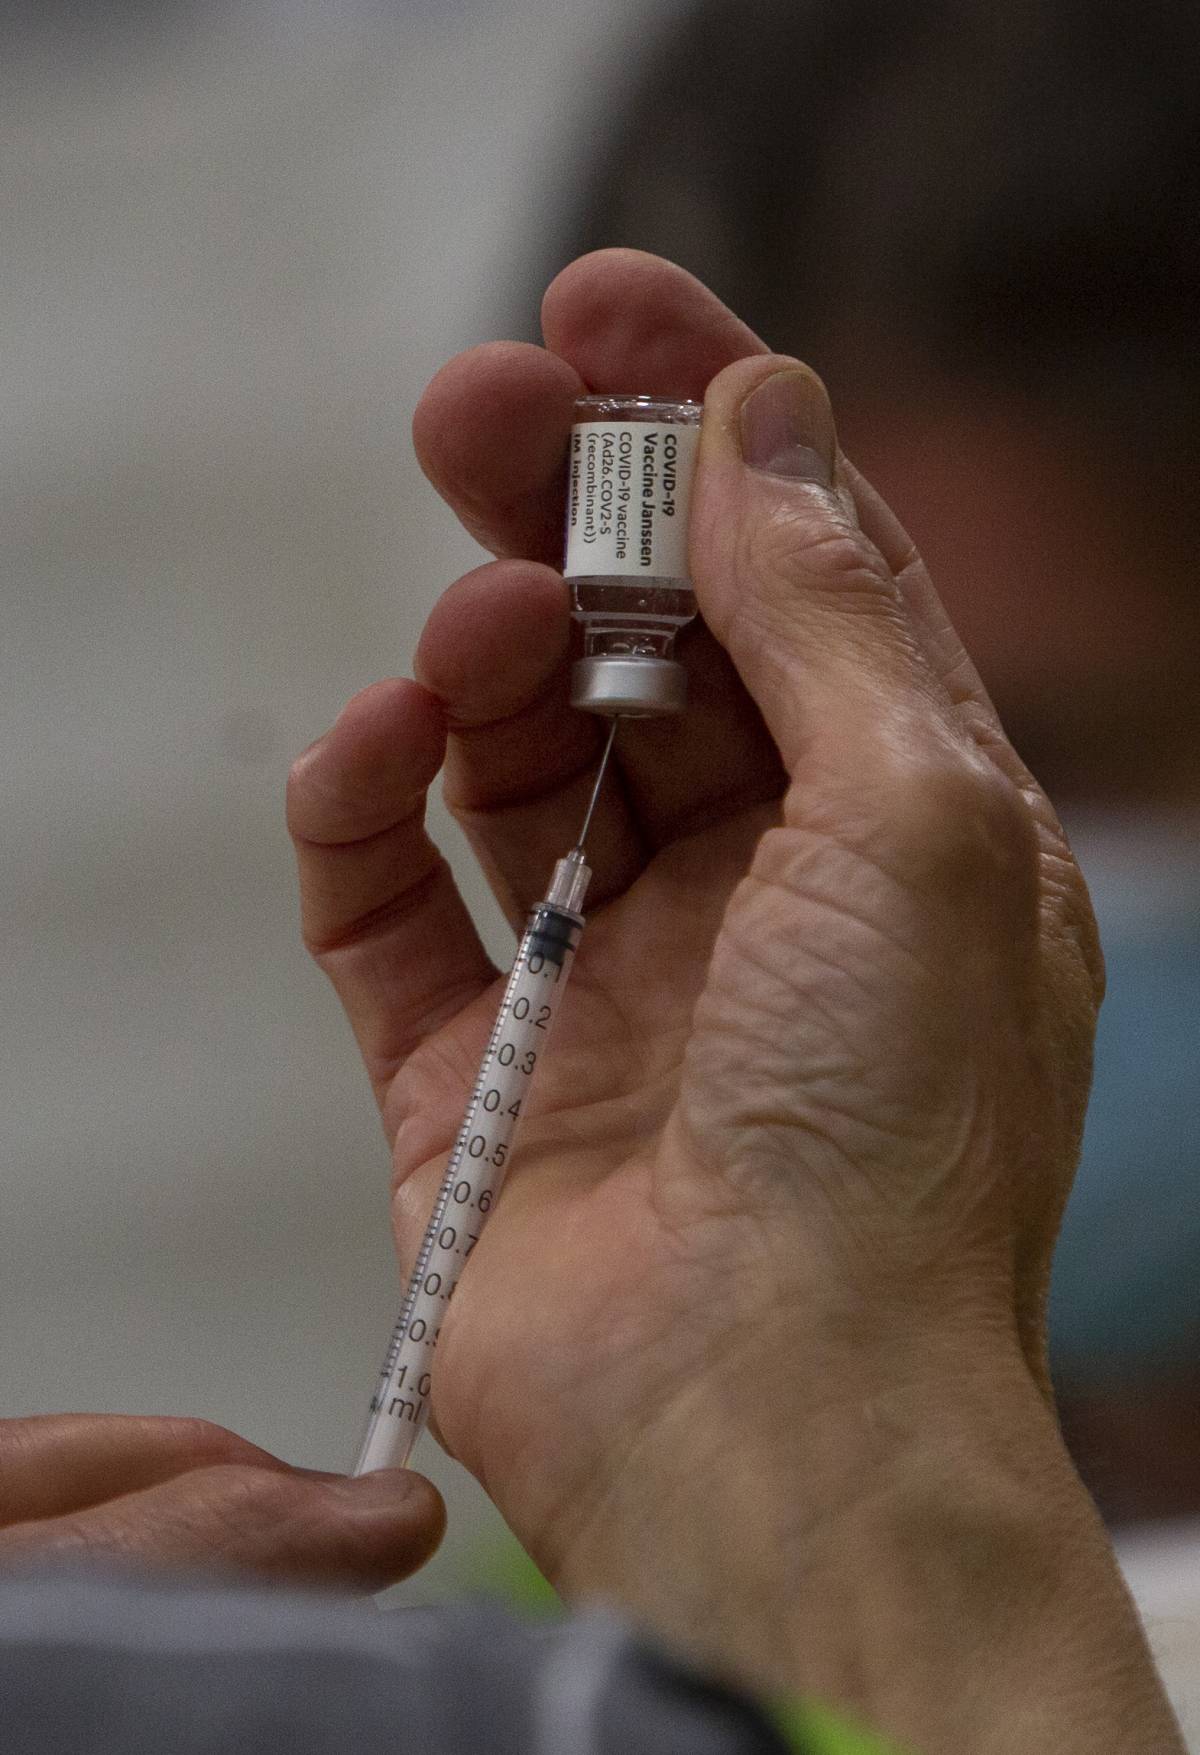 Vaccinato 217 volte contro il Covid: l'uomo tedesco diventa un caso di studio